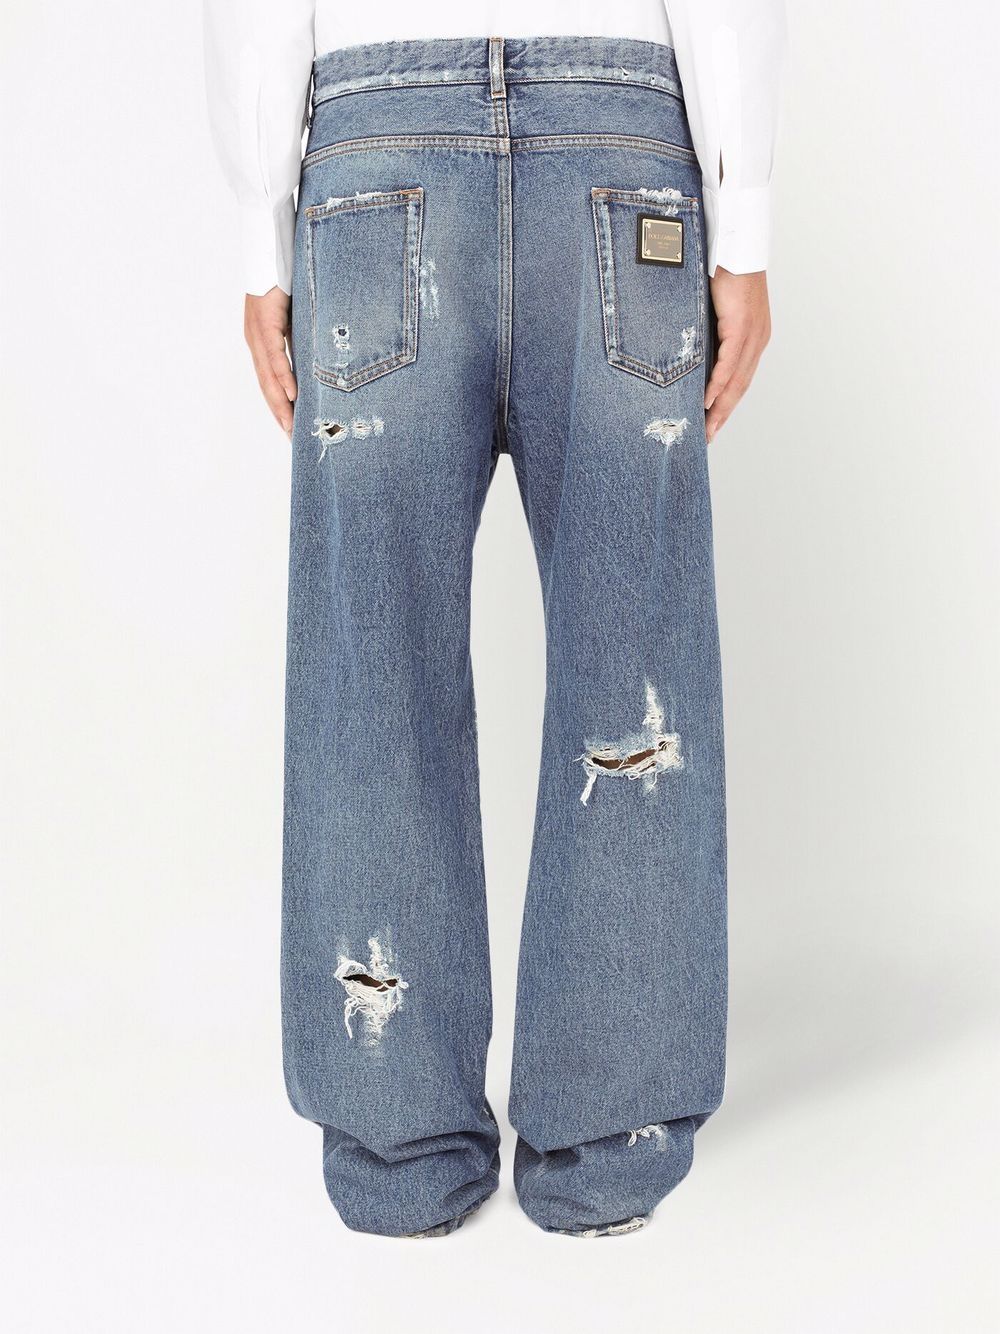 фото Dolce & gabbana джинсы свободного кроя с прорезями